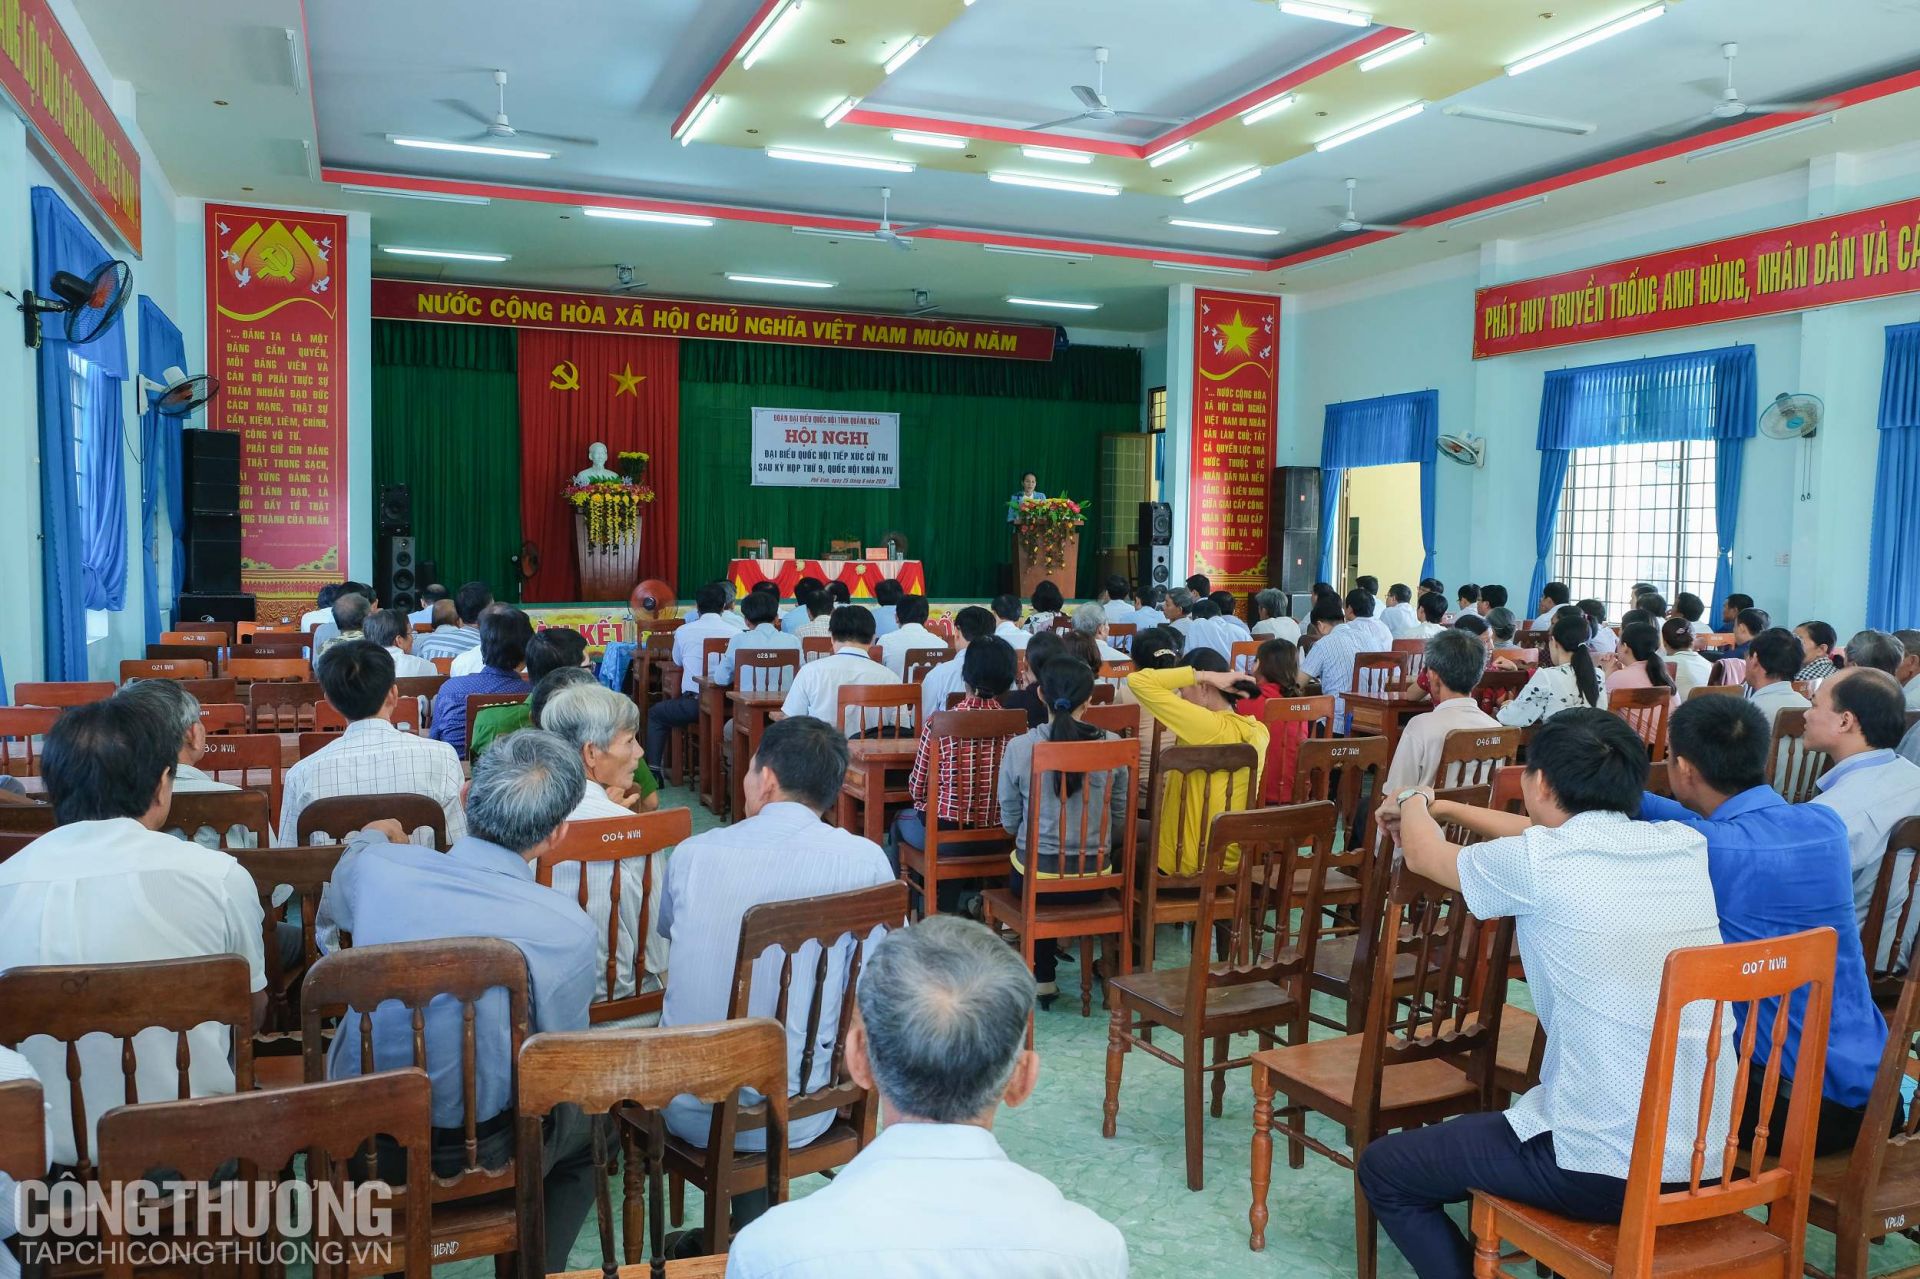 Toàn cảnh buổi tiếp xúc cử tri của Đoàn ĐBQH tỉnh Quảng Ngãi